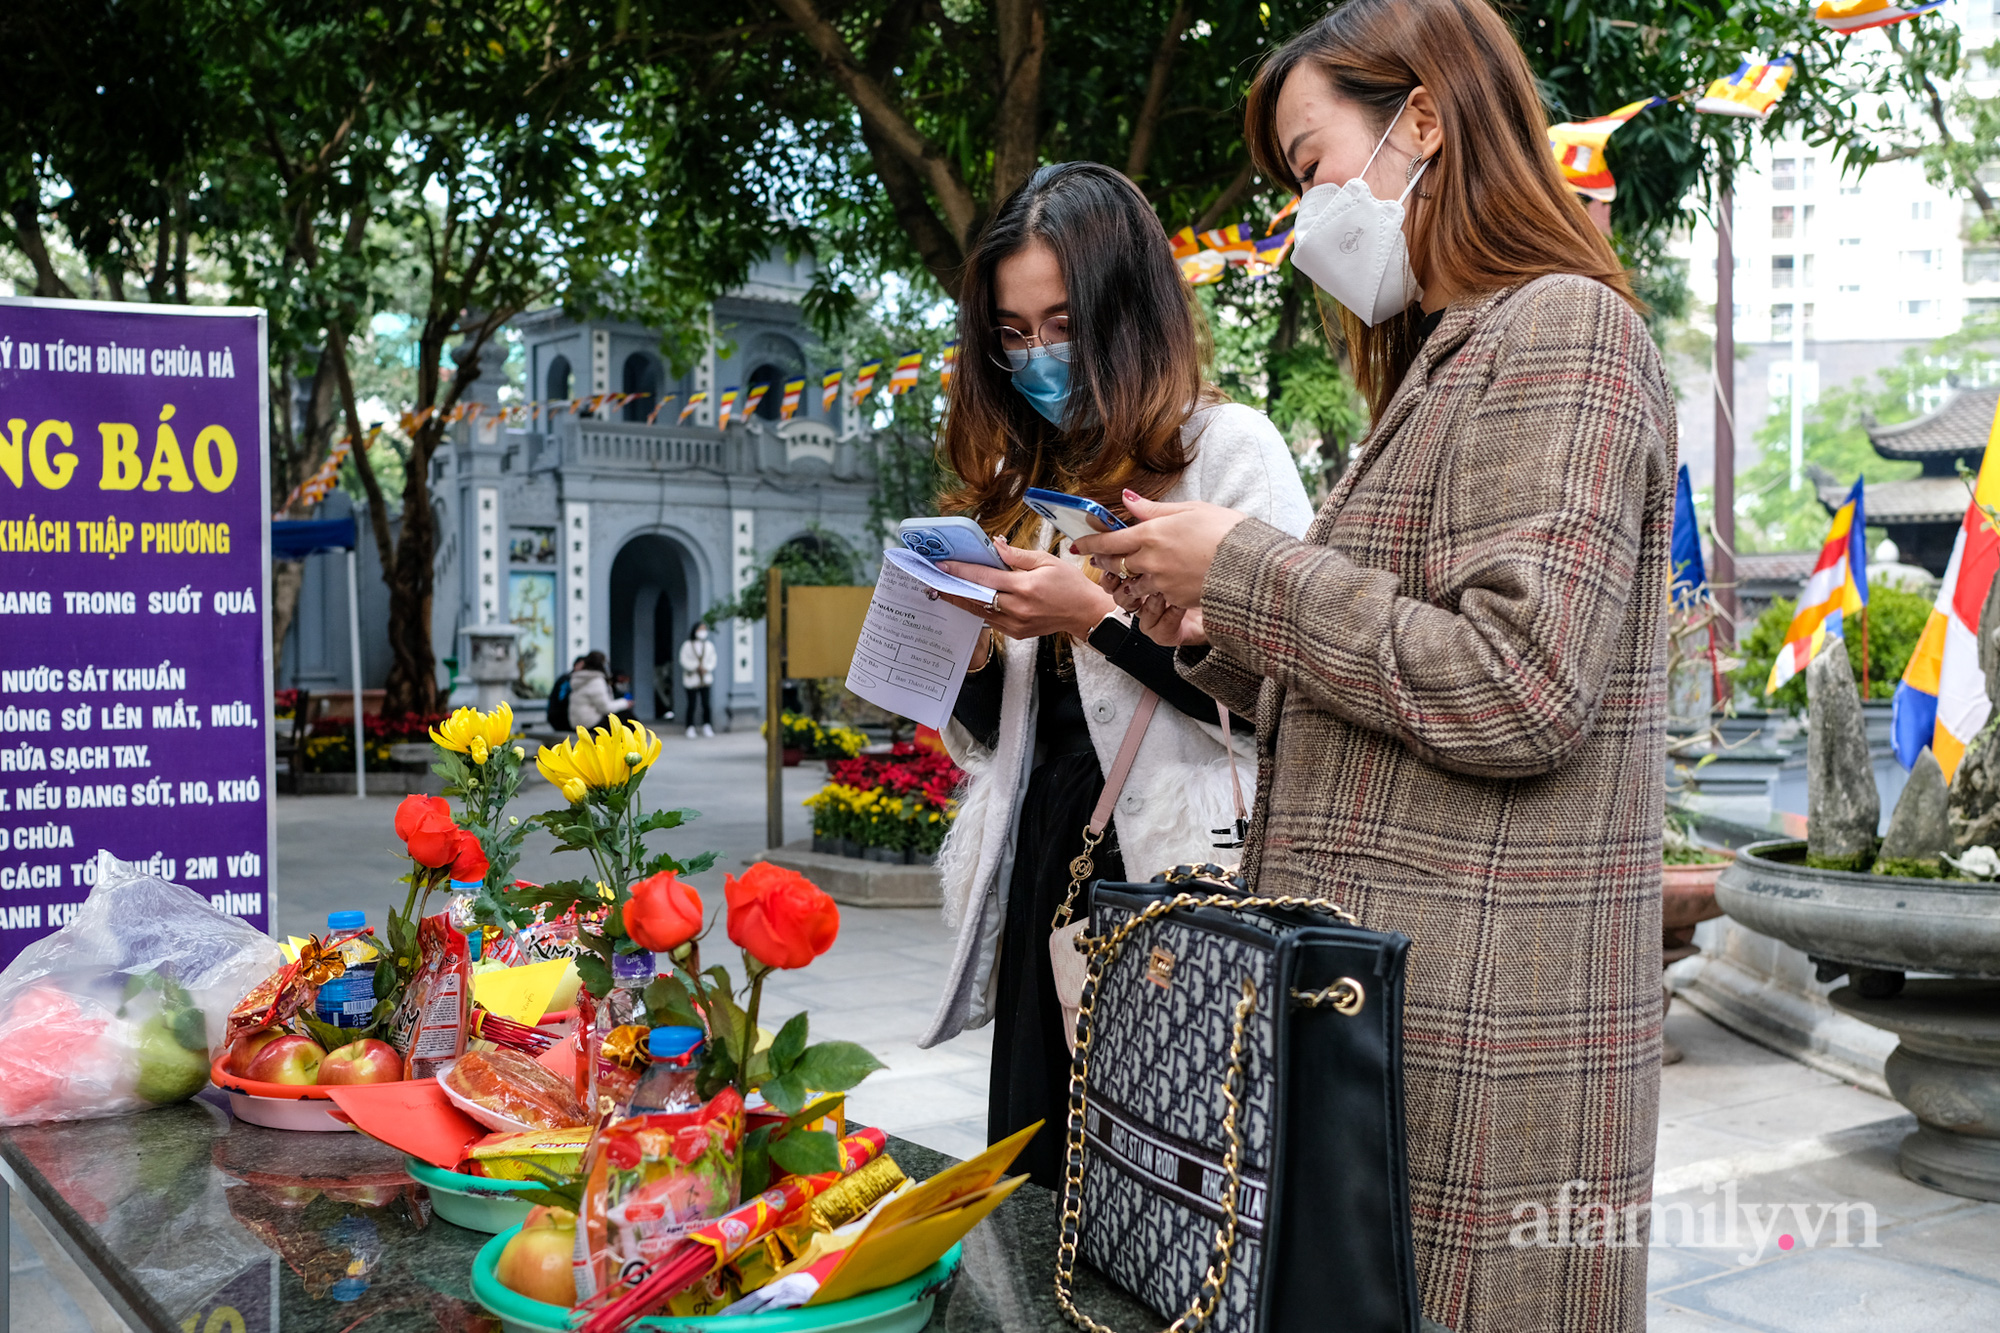 Từ Sài Gòn ra Hà Nội công tác, cô gái tranh thủ đến bằng được chùa Hà cầu duyên mới về - Ảnh 6.